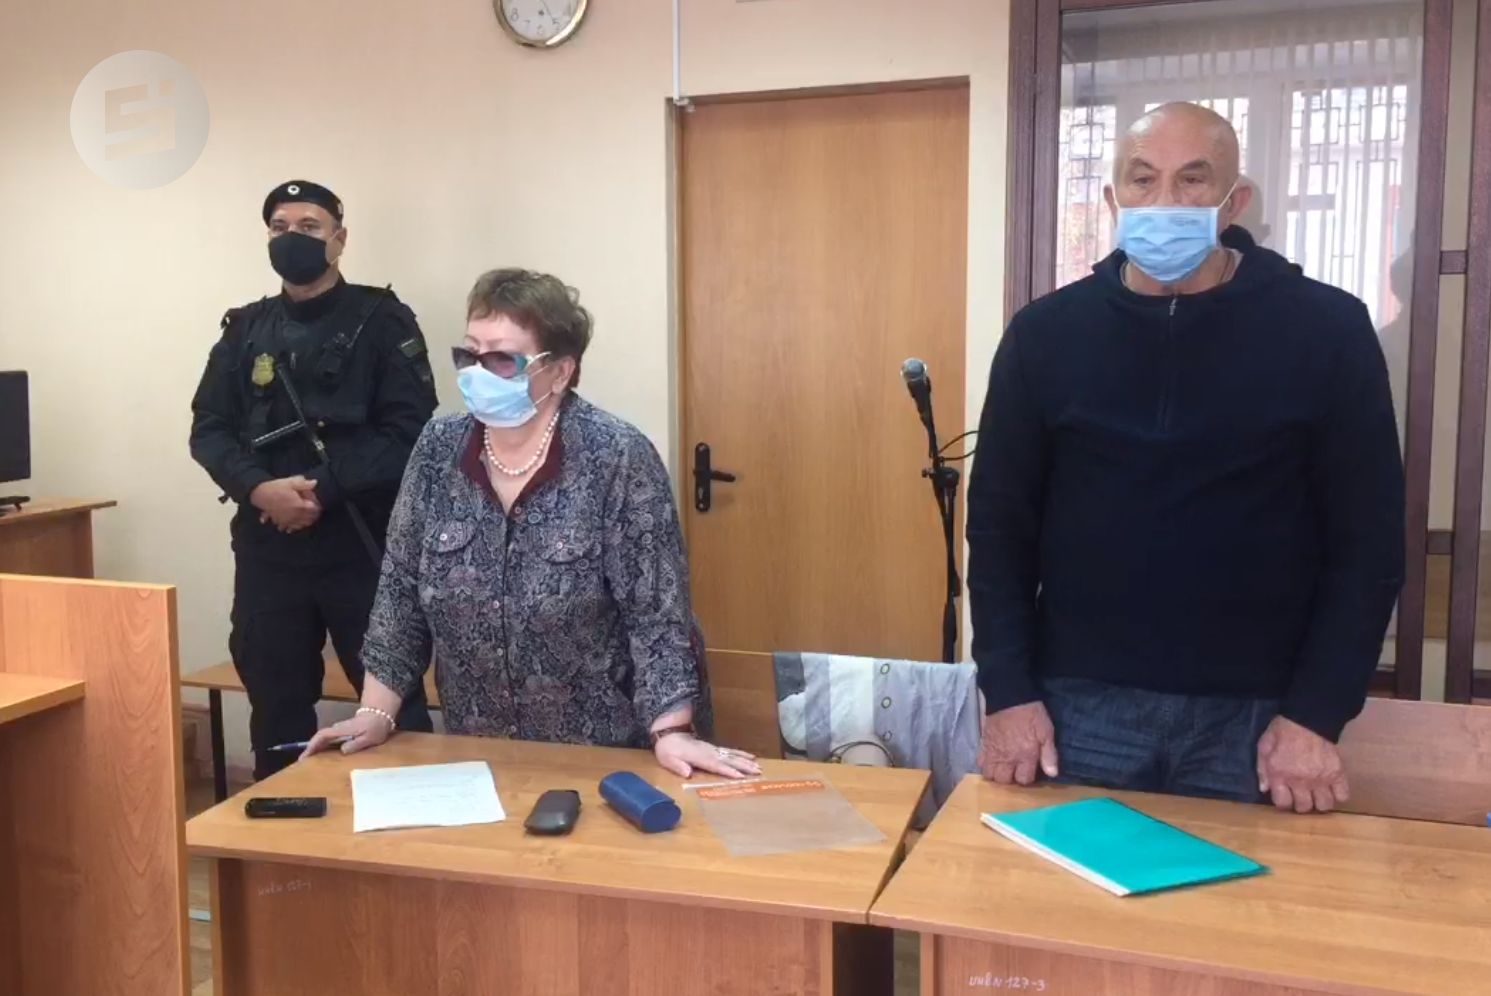 

Защита осужденного экс-главы Удмуртии Александра Соловьева намерена обжаловать приговор

